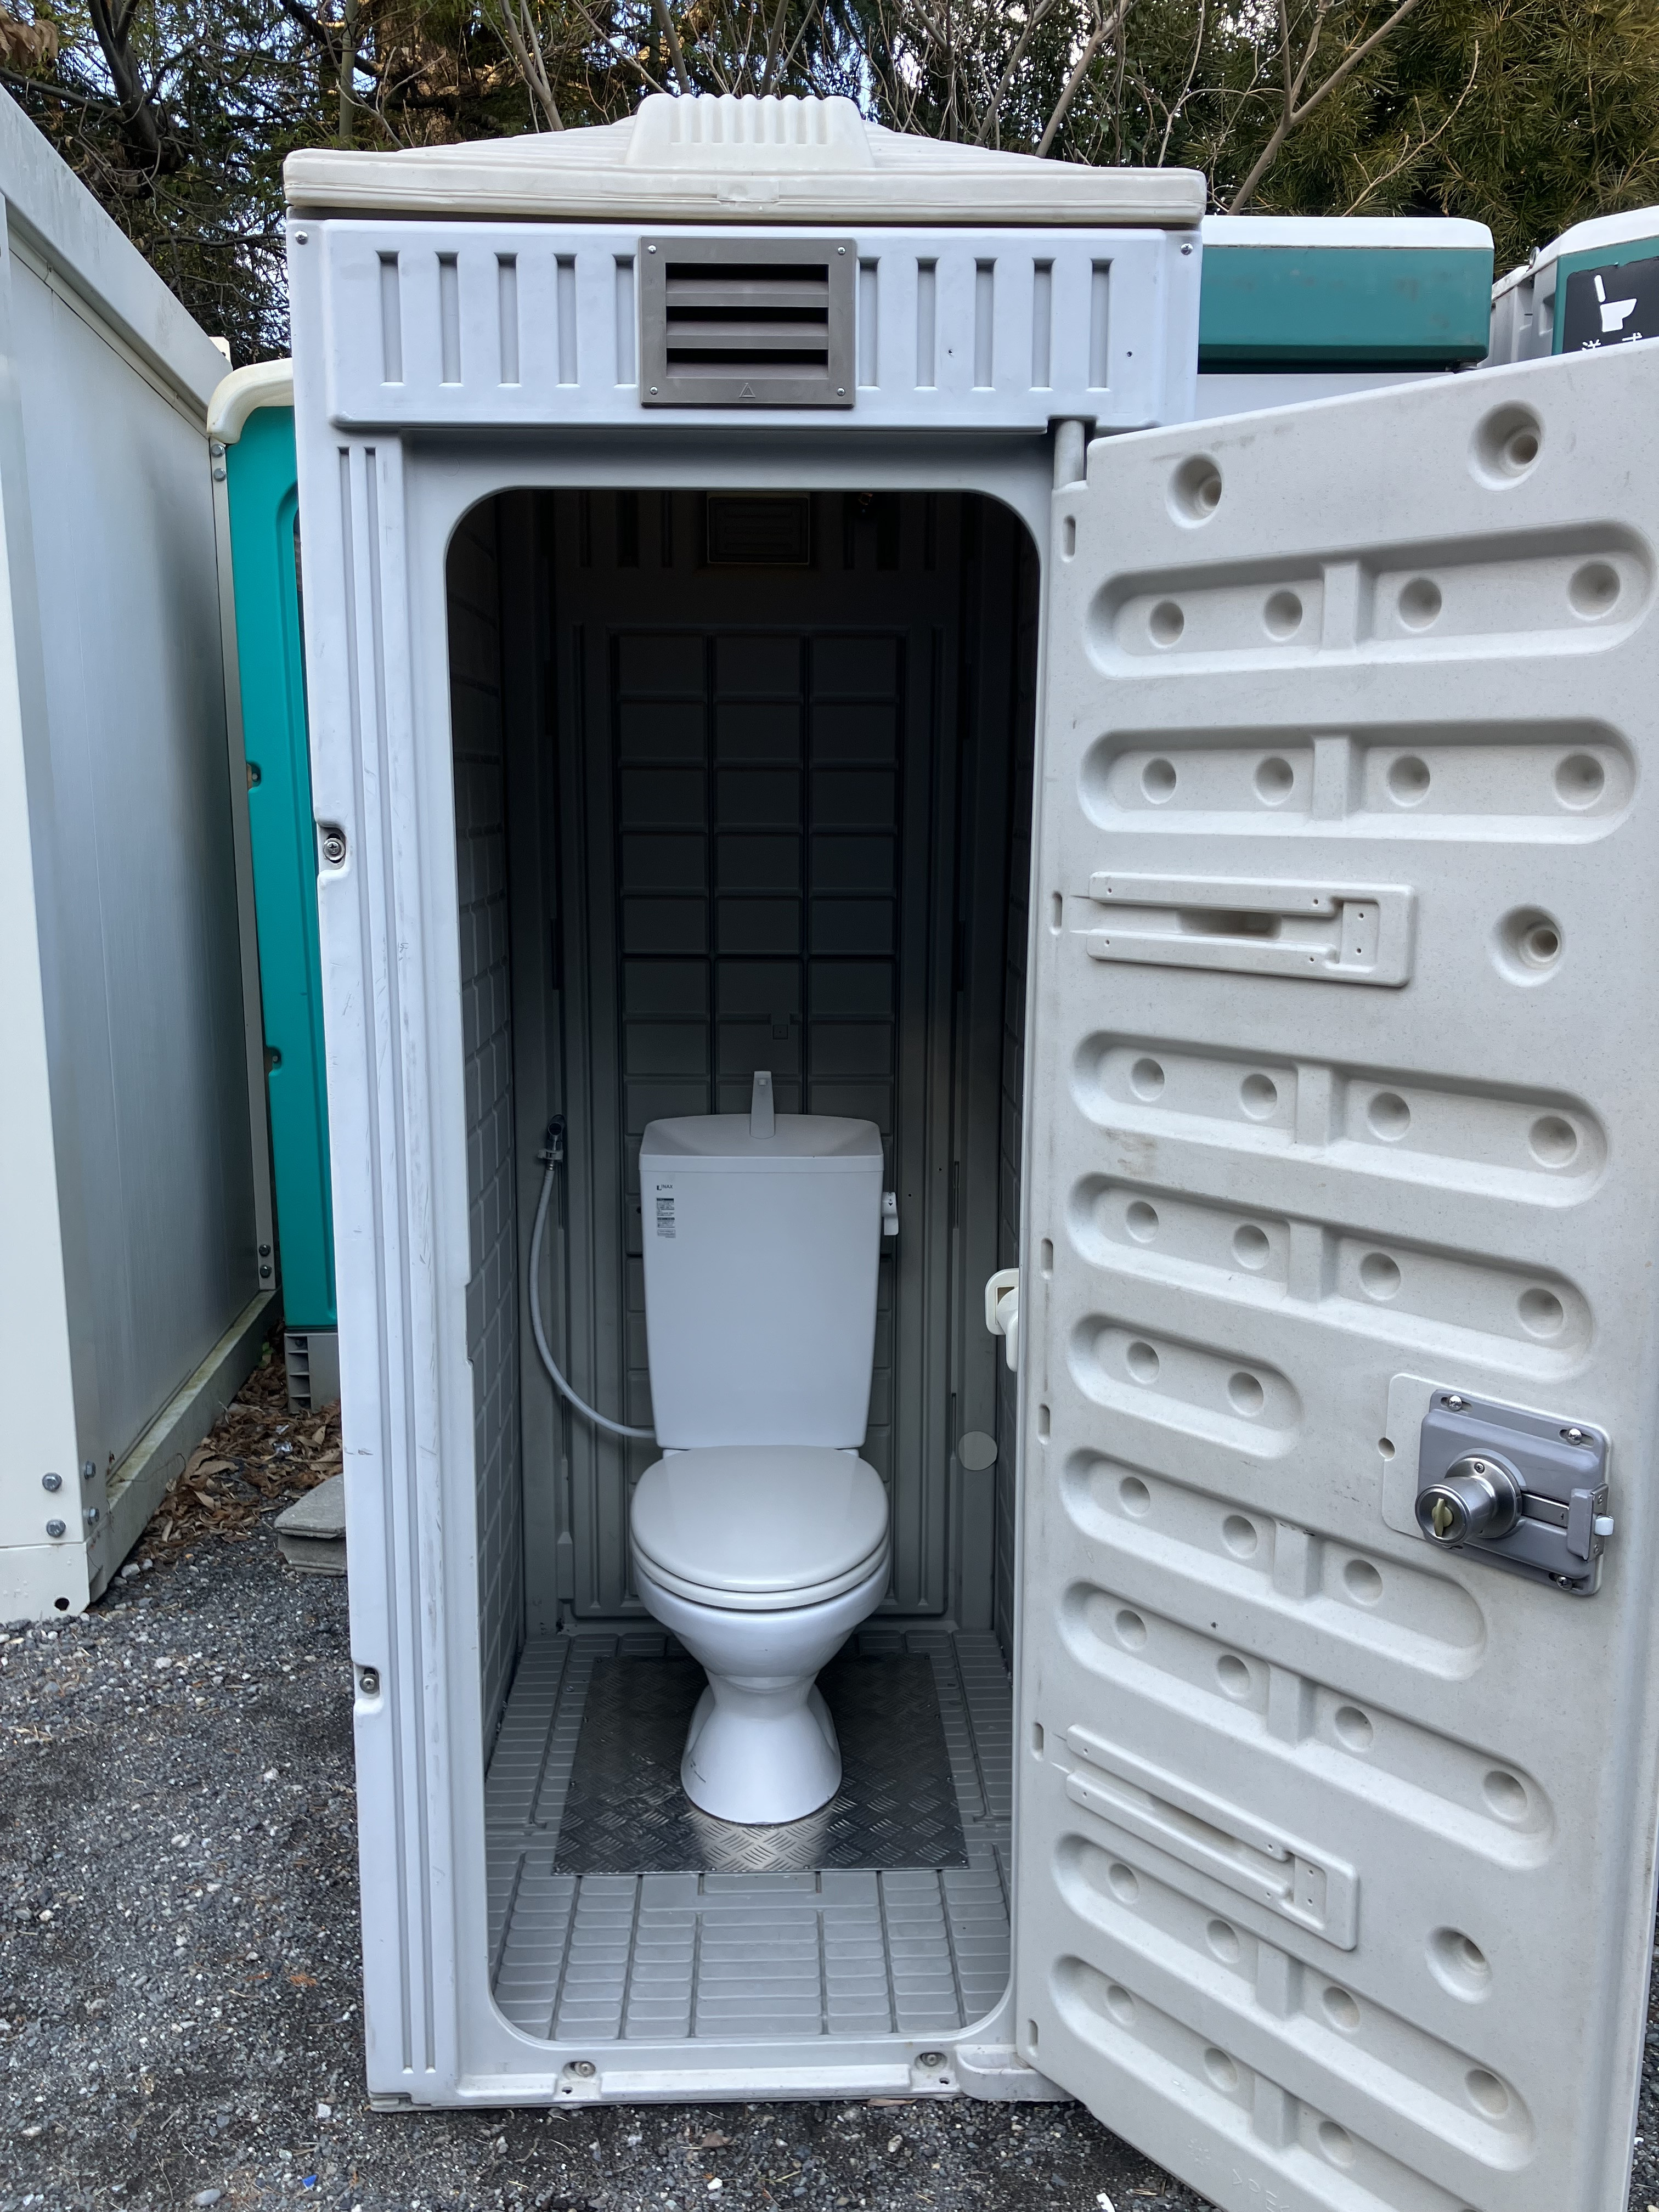 仮設トイレ()沖縄県うるま市 - 沖縄県の家電